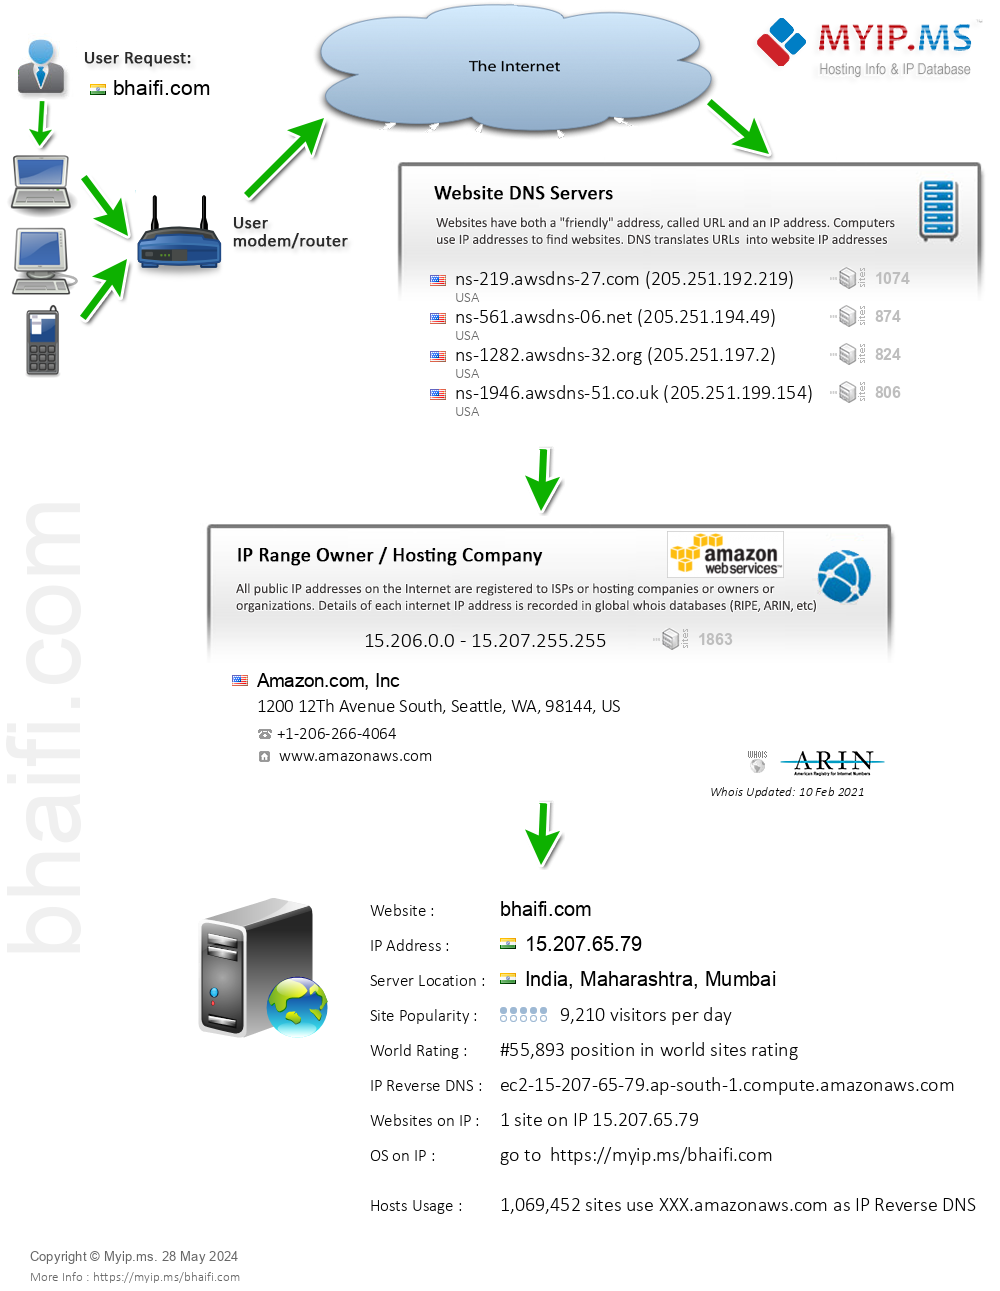 Bhaifi.com - Website Hosting Visual IP Diagram